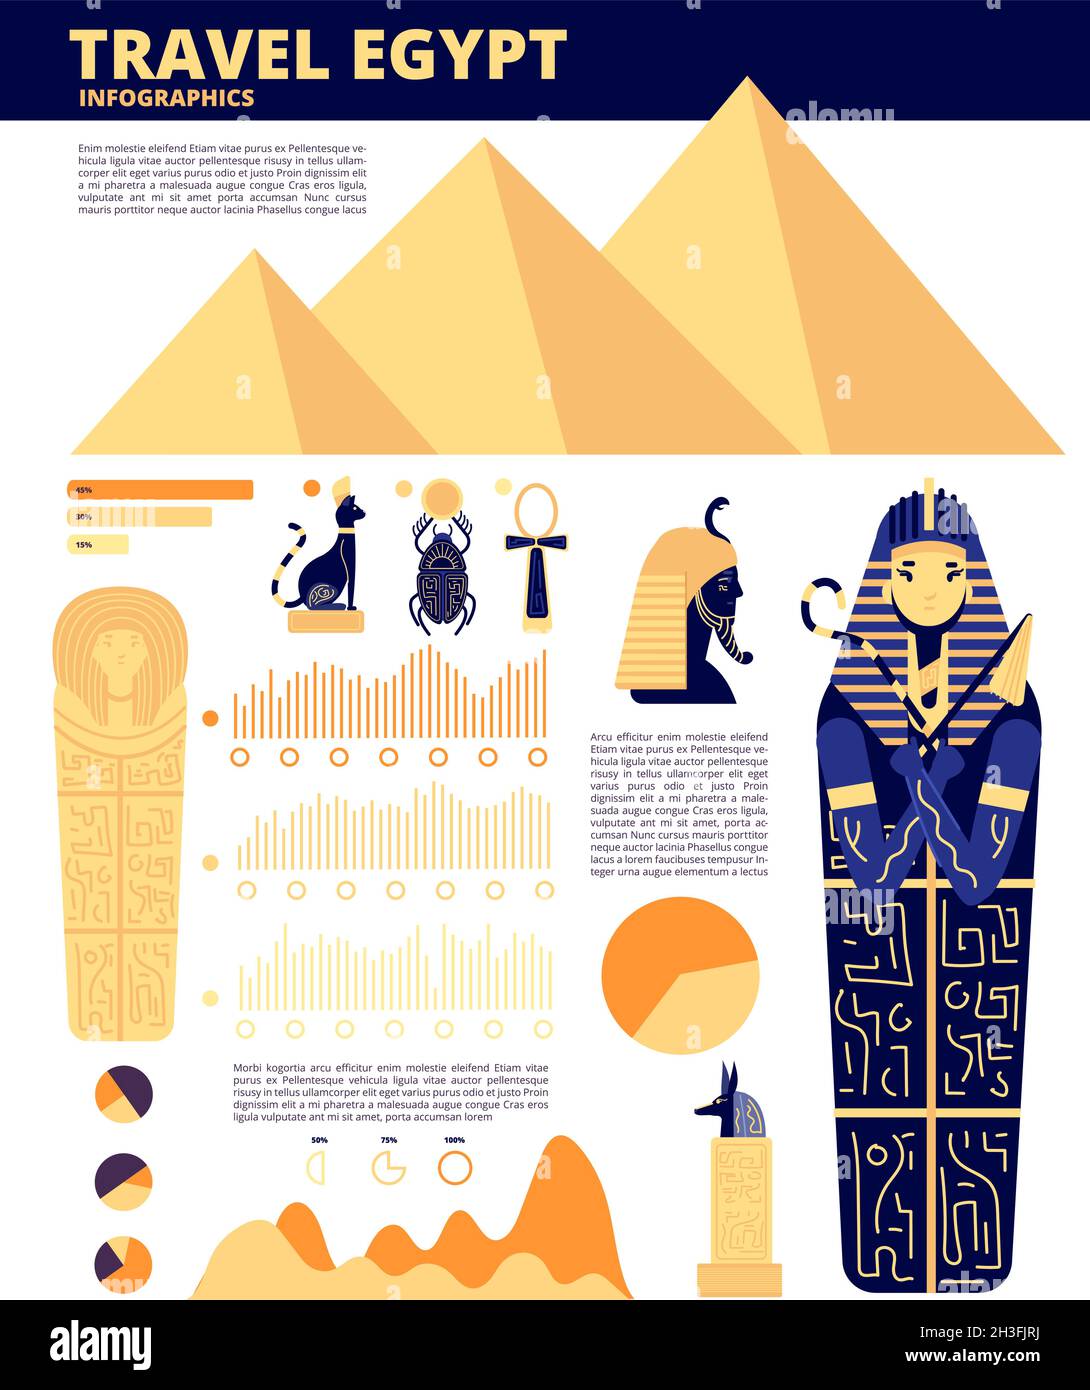 Voyage en Egypte.Éléments d'histoire ancienne, symboles égyptiens infographiques.Concept de site de voyage, repères de pyramide affiche d'information de vecteur Illustration de Vecteur